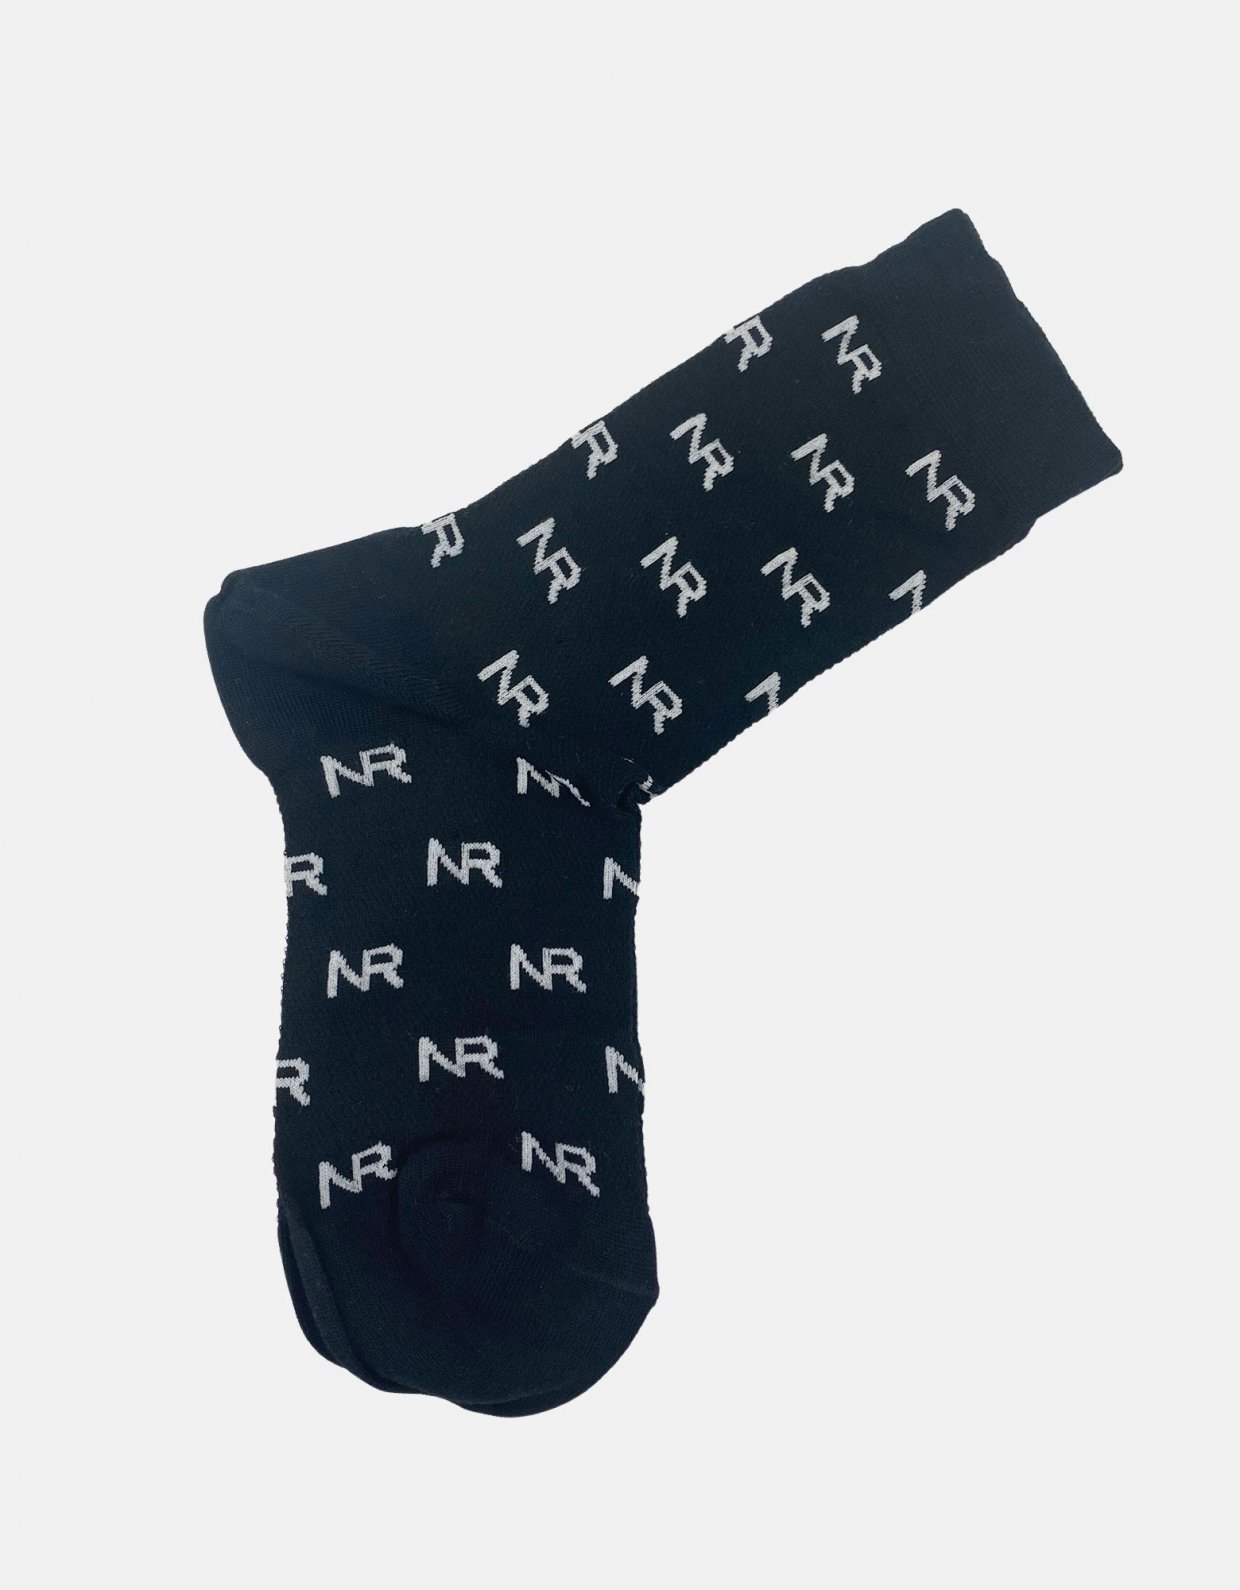 Nadia Rapti Full in logo socks black